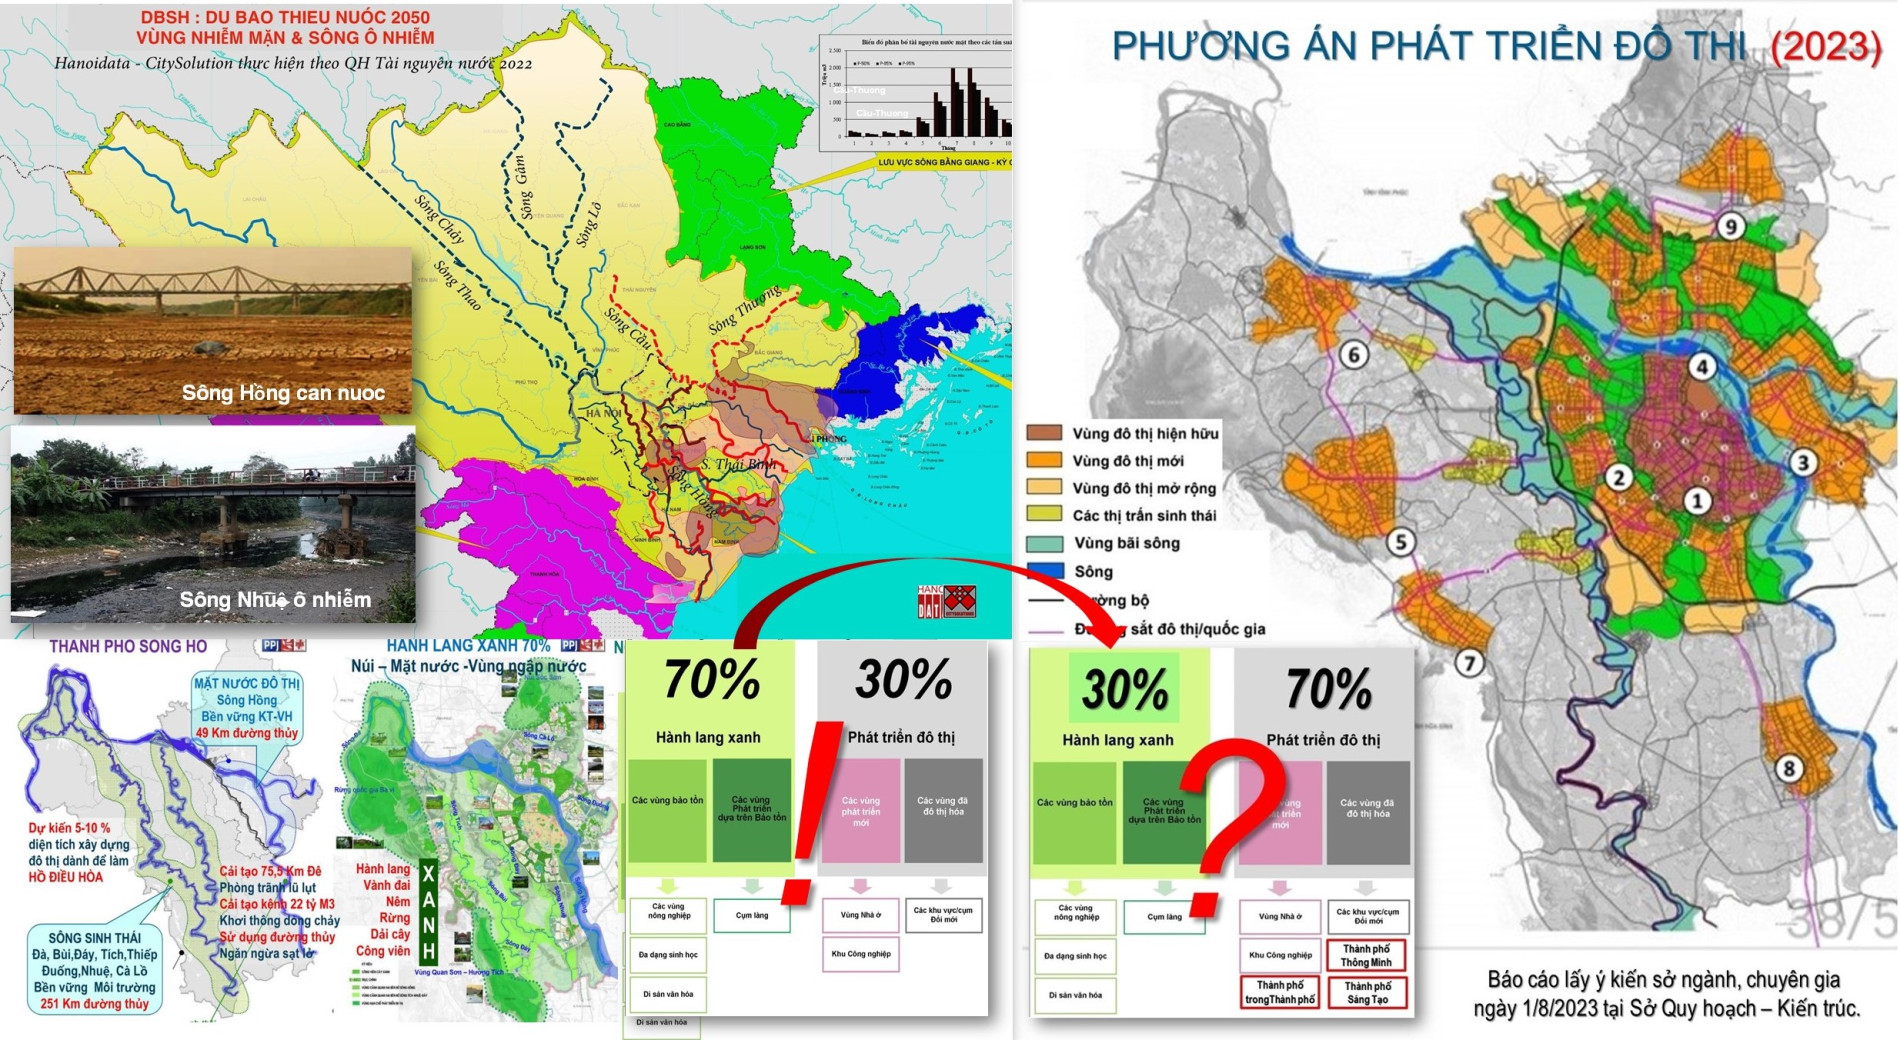 Quy hoạch Thủ đô: kết quả sau 4 tháng thực hiện và 18 cuộc tọa đàm - Bài 1: Quy hoạch Thủ đô trọng yếu trong Quy hoạch tổng thể Quốc gia - Tạp chí Kiến trúc Việt Nam